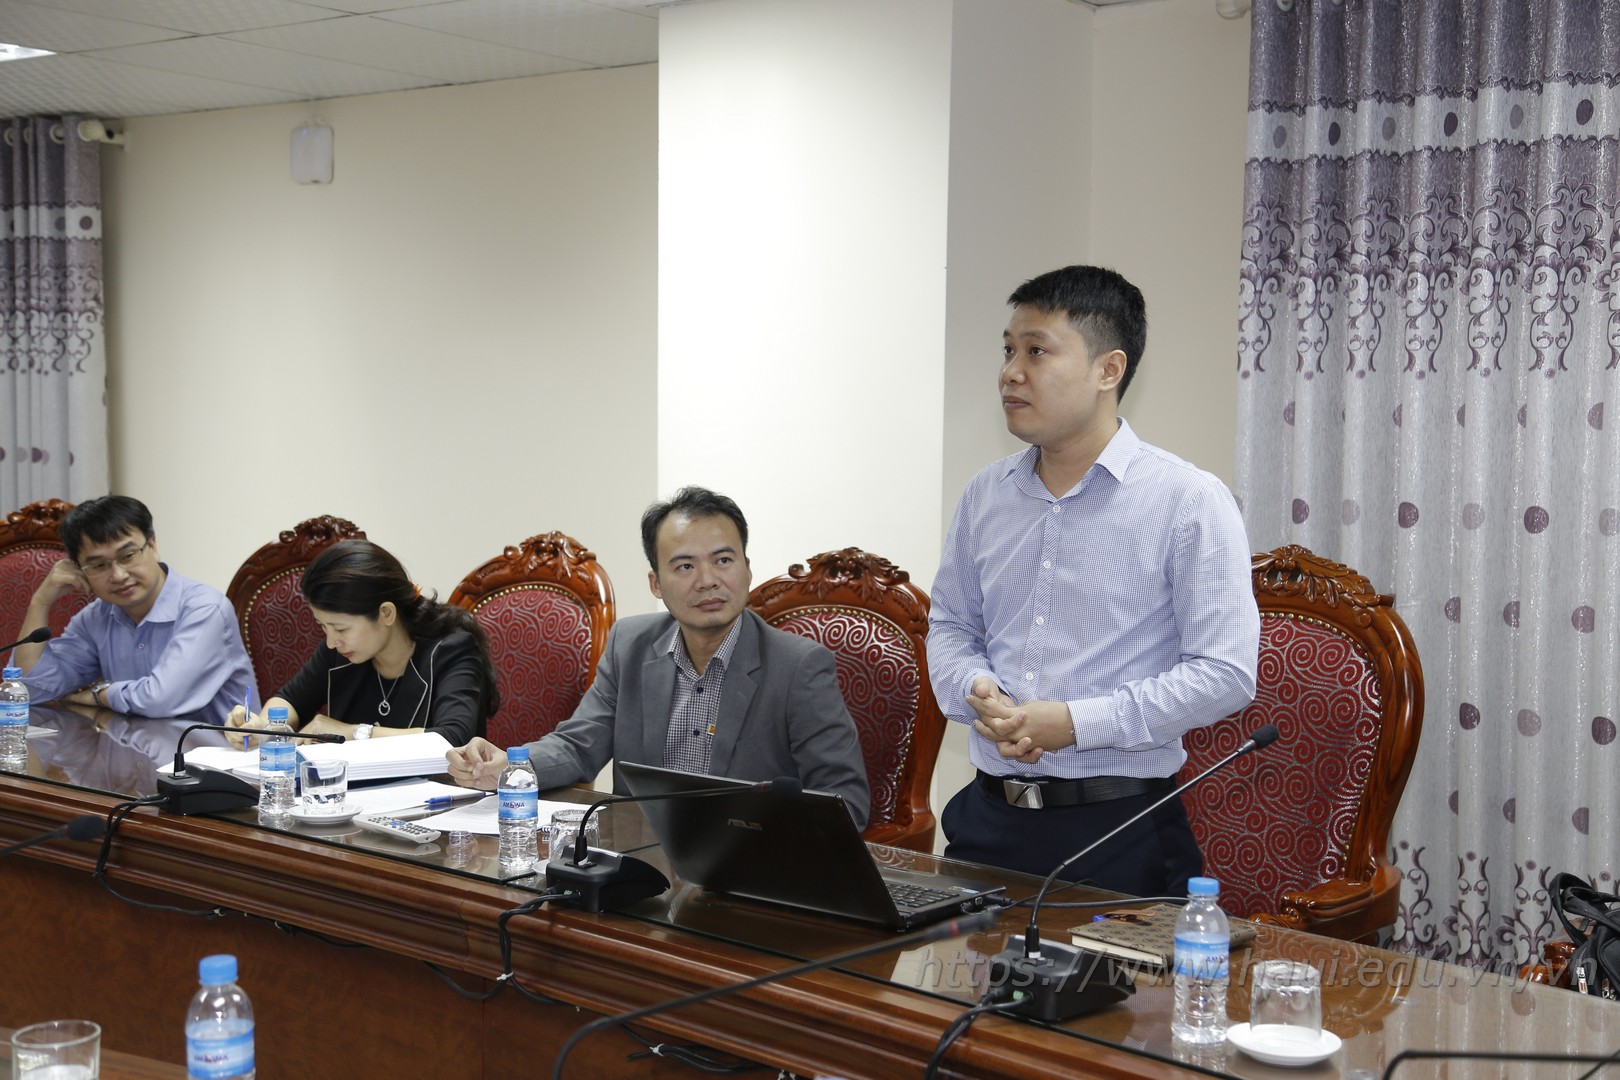 Đề tài NCKH cấp trường: “Nghiên cứu khung năng lực lãnh đạo của giám đốc điều hành các doanh nghiệp công nghiệp vừa và nhỏ ở Việt Nam hiện nay”